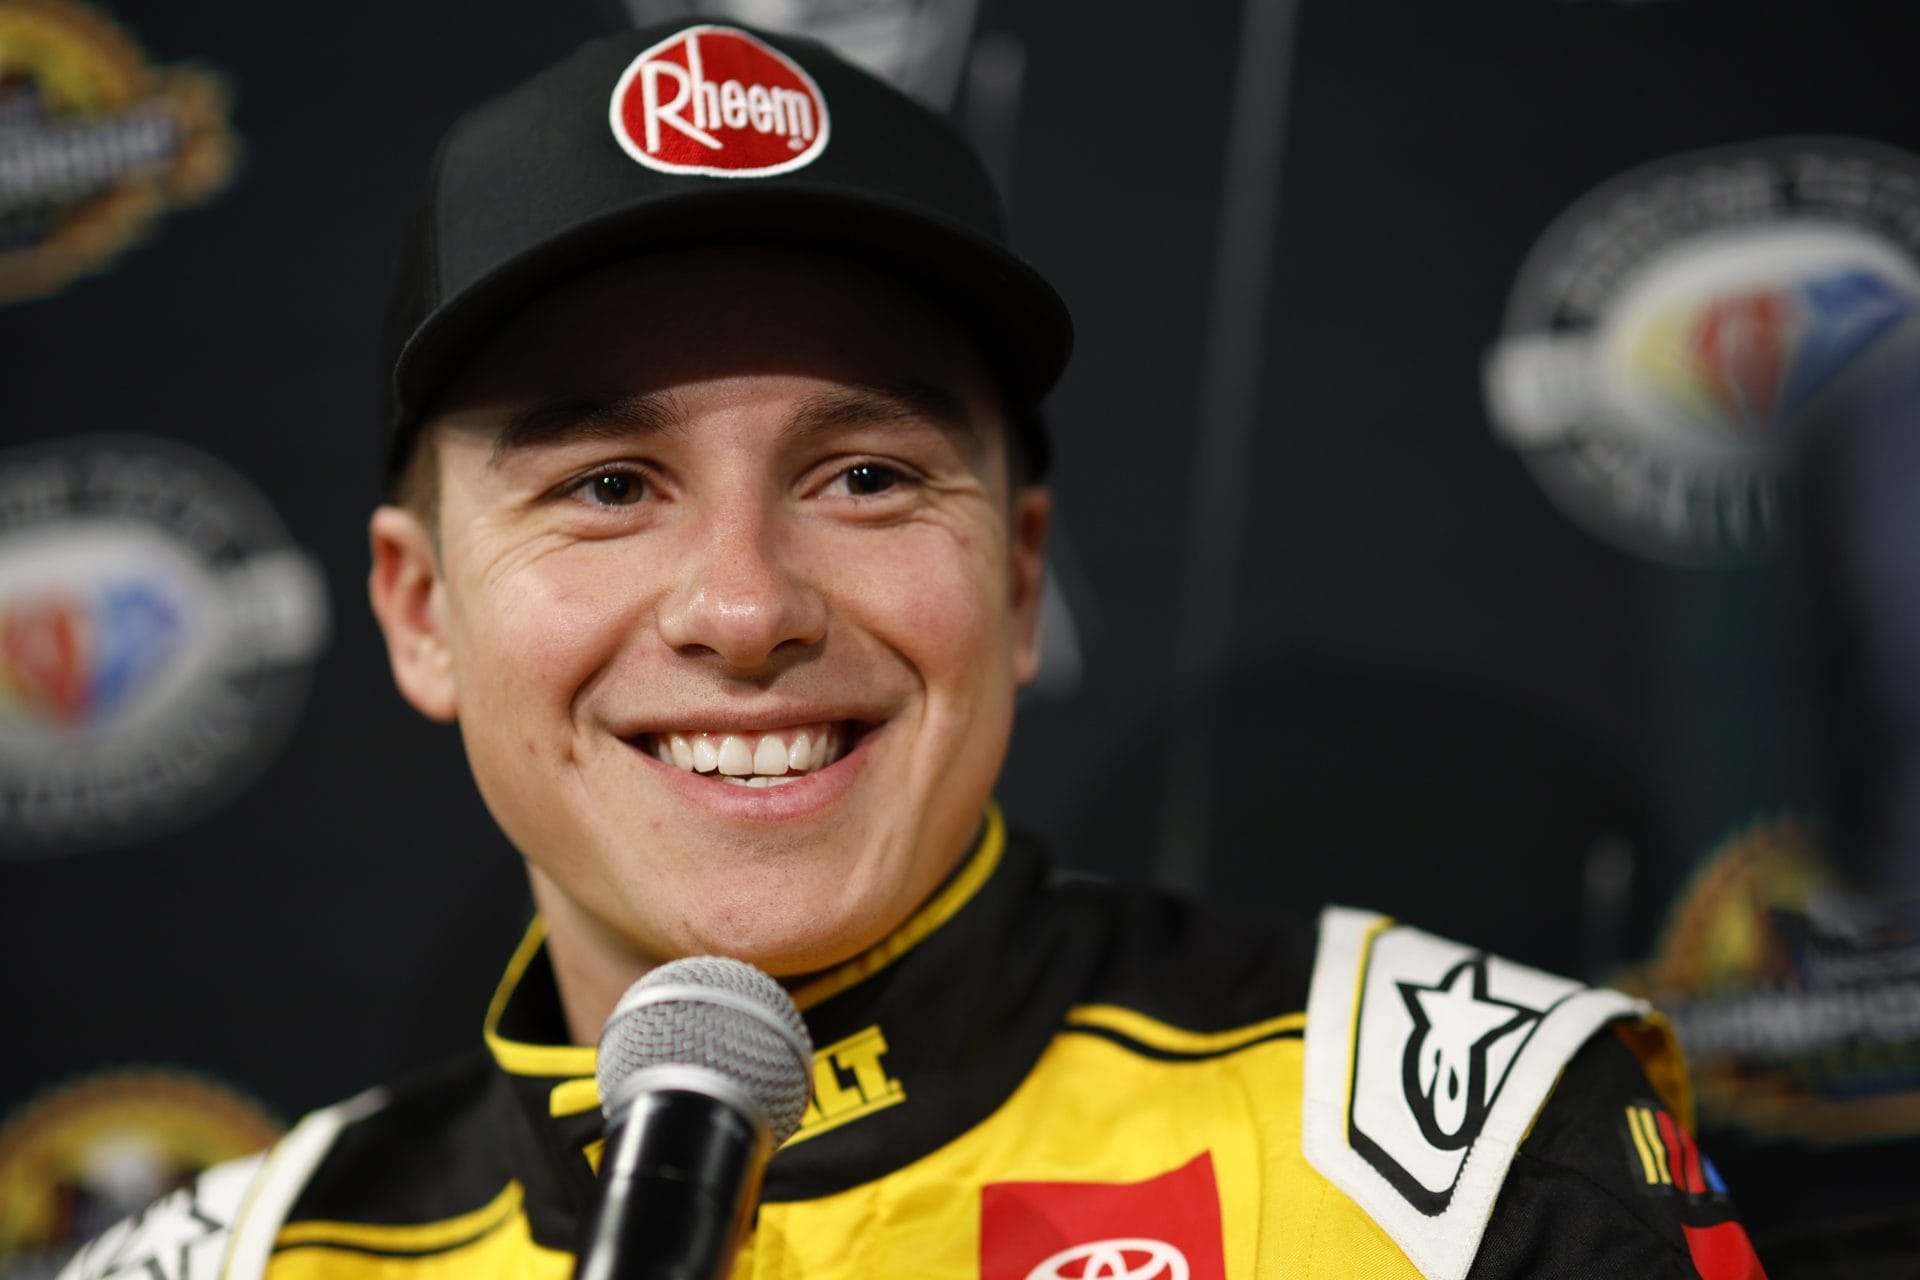 A NASCAR világa megrázkódott: Bell elszólja magát Truex utódjáról